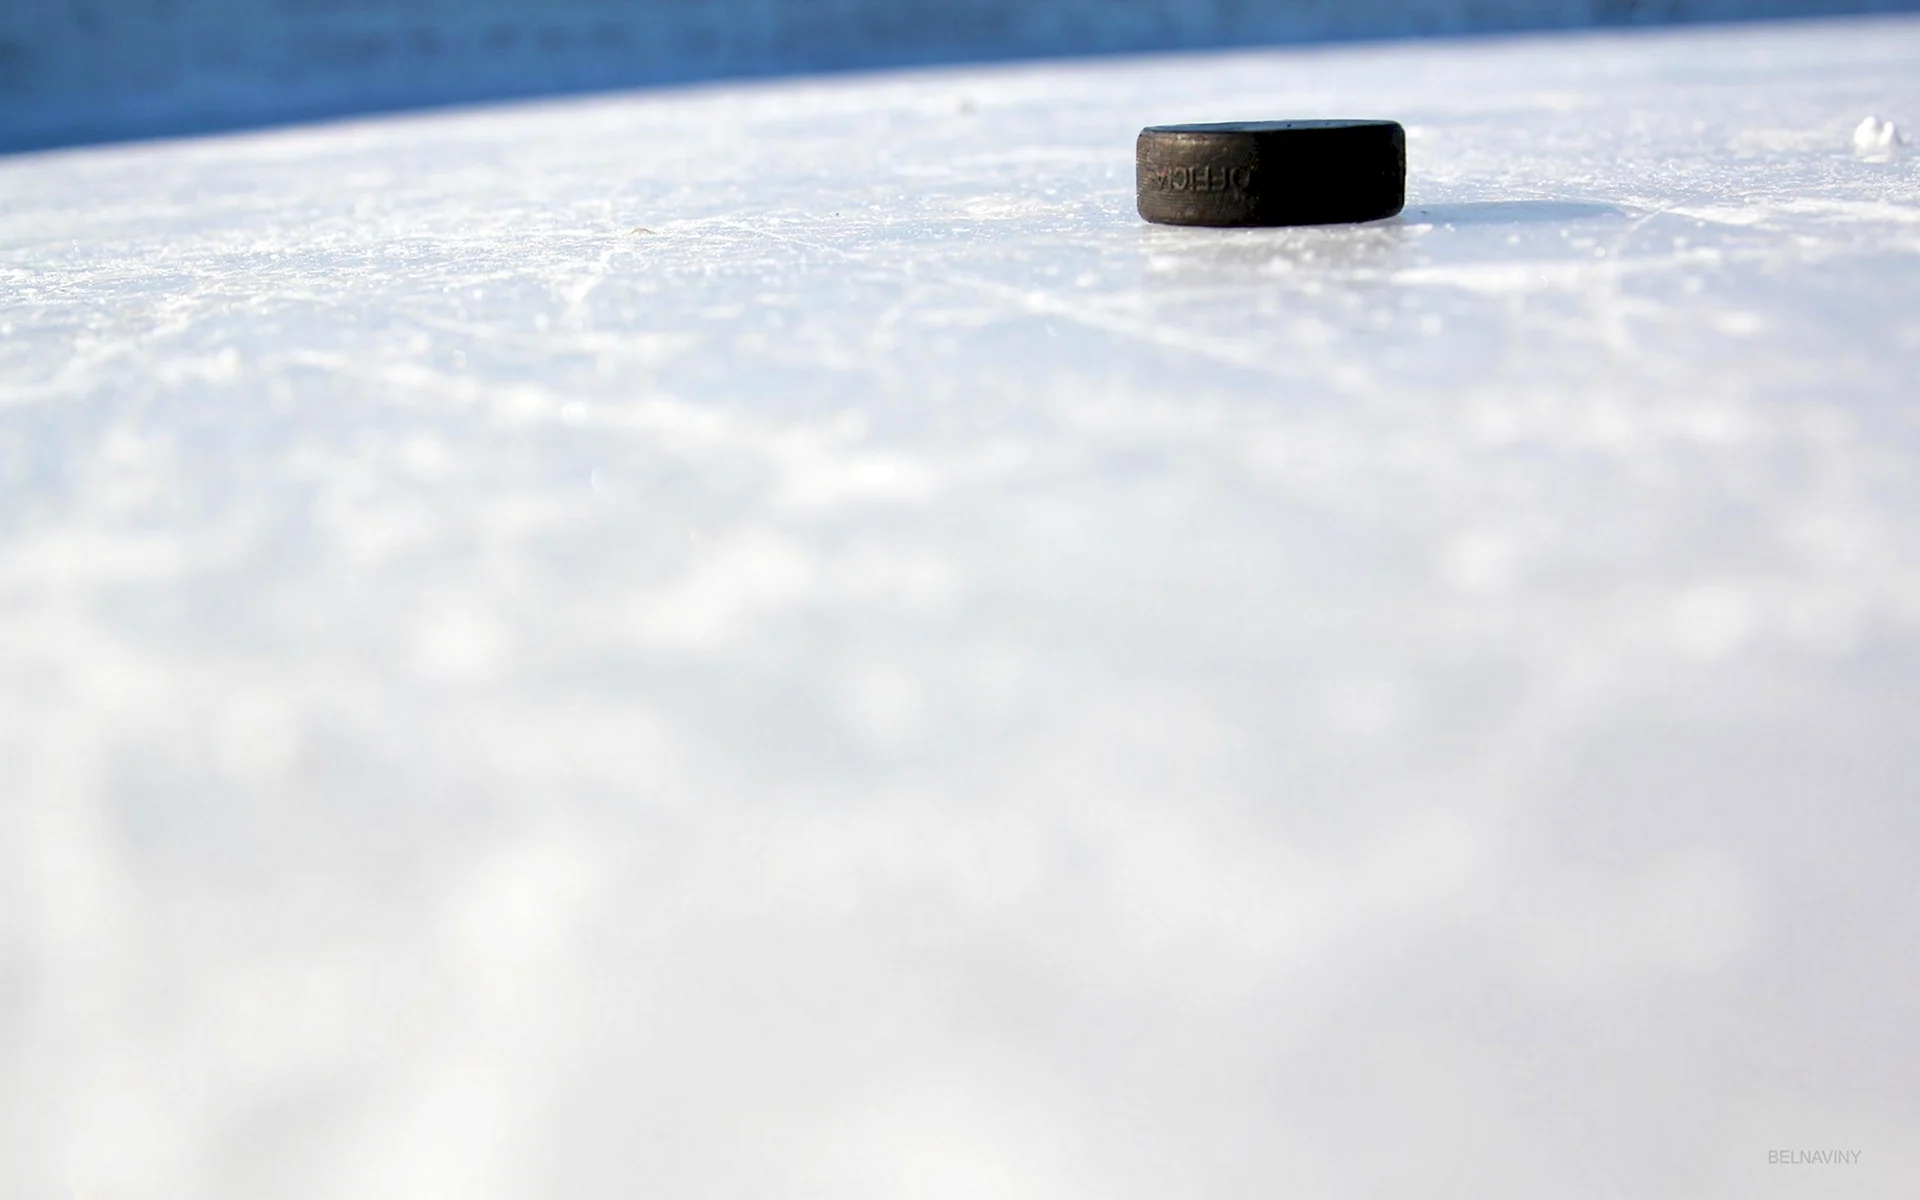 Шайба хоккейная на льду